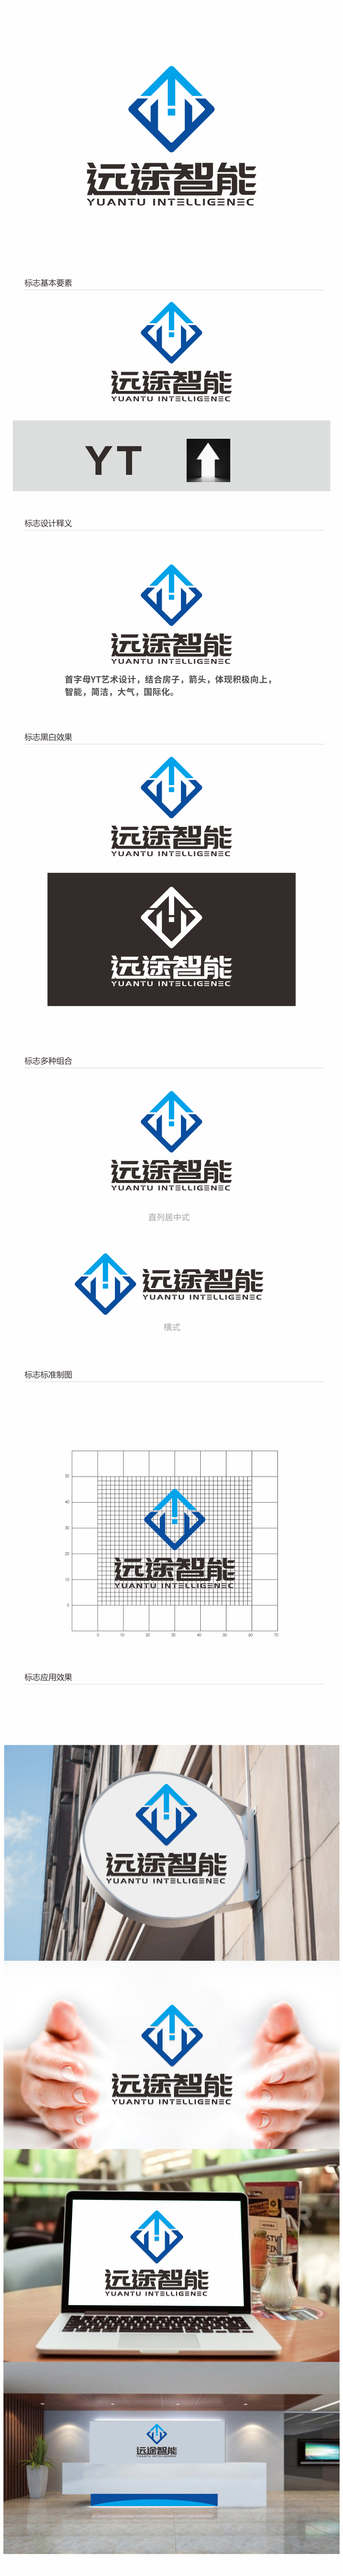 汤儒娟的江苏远途智能装配房有限公司logo设计